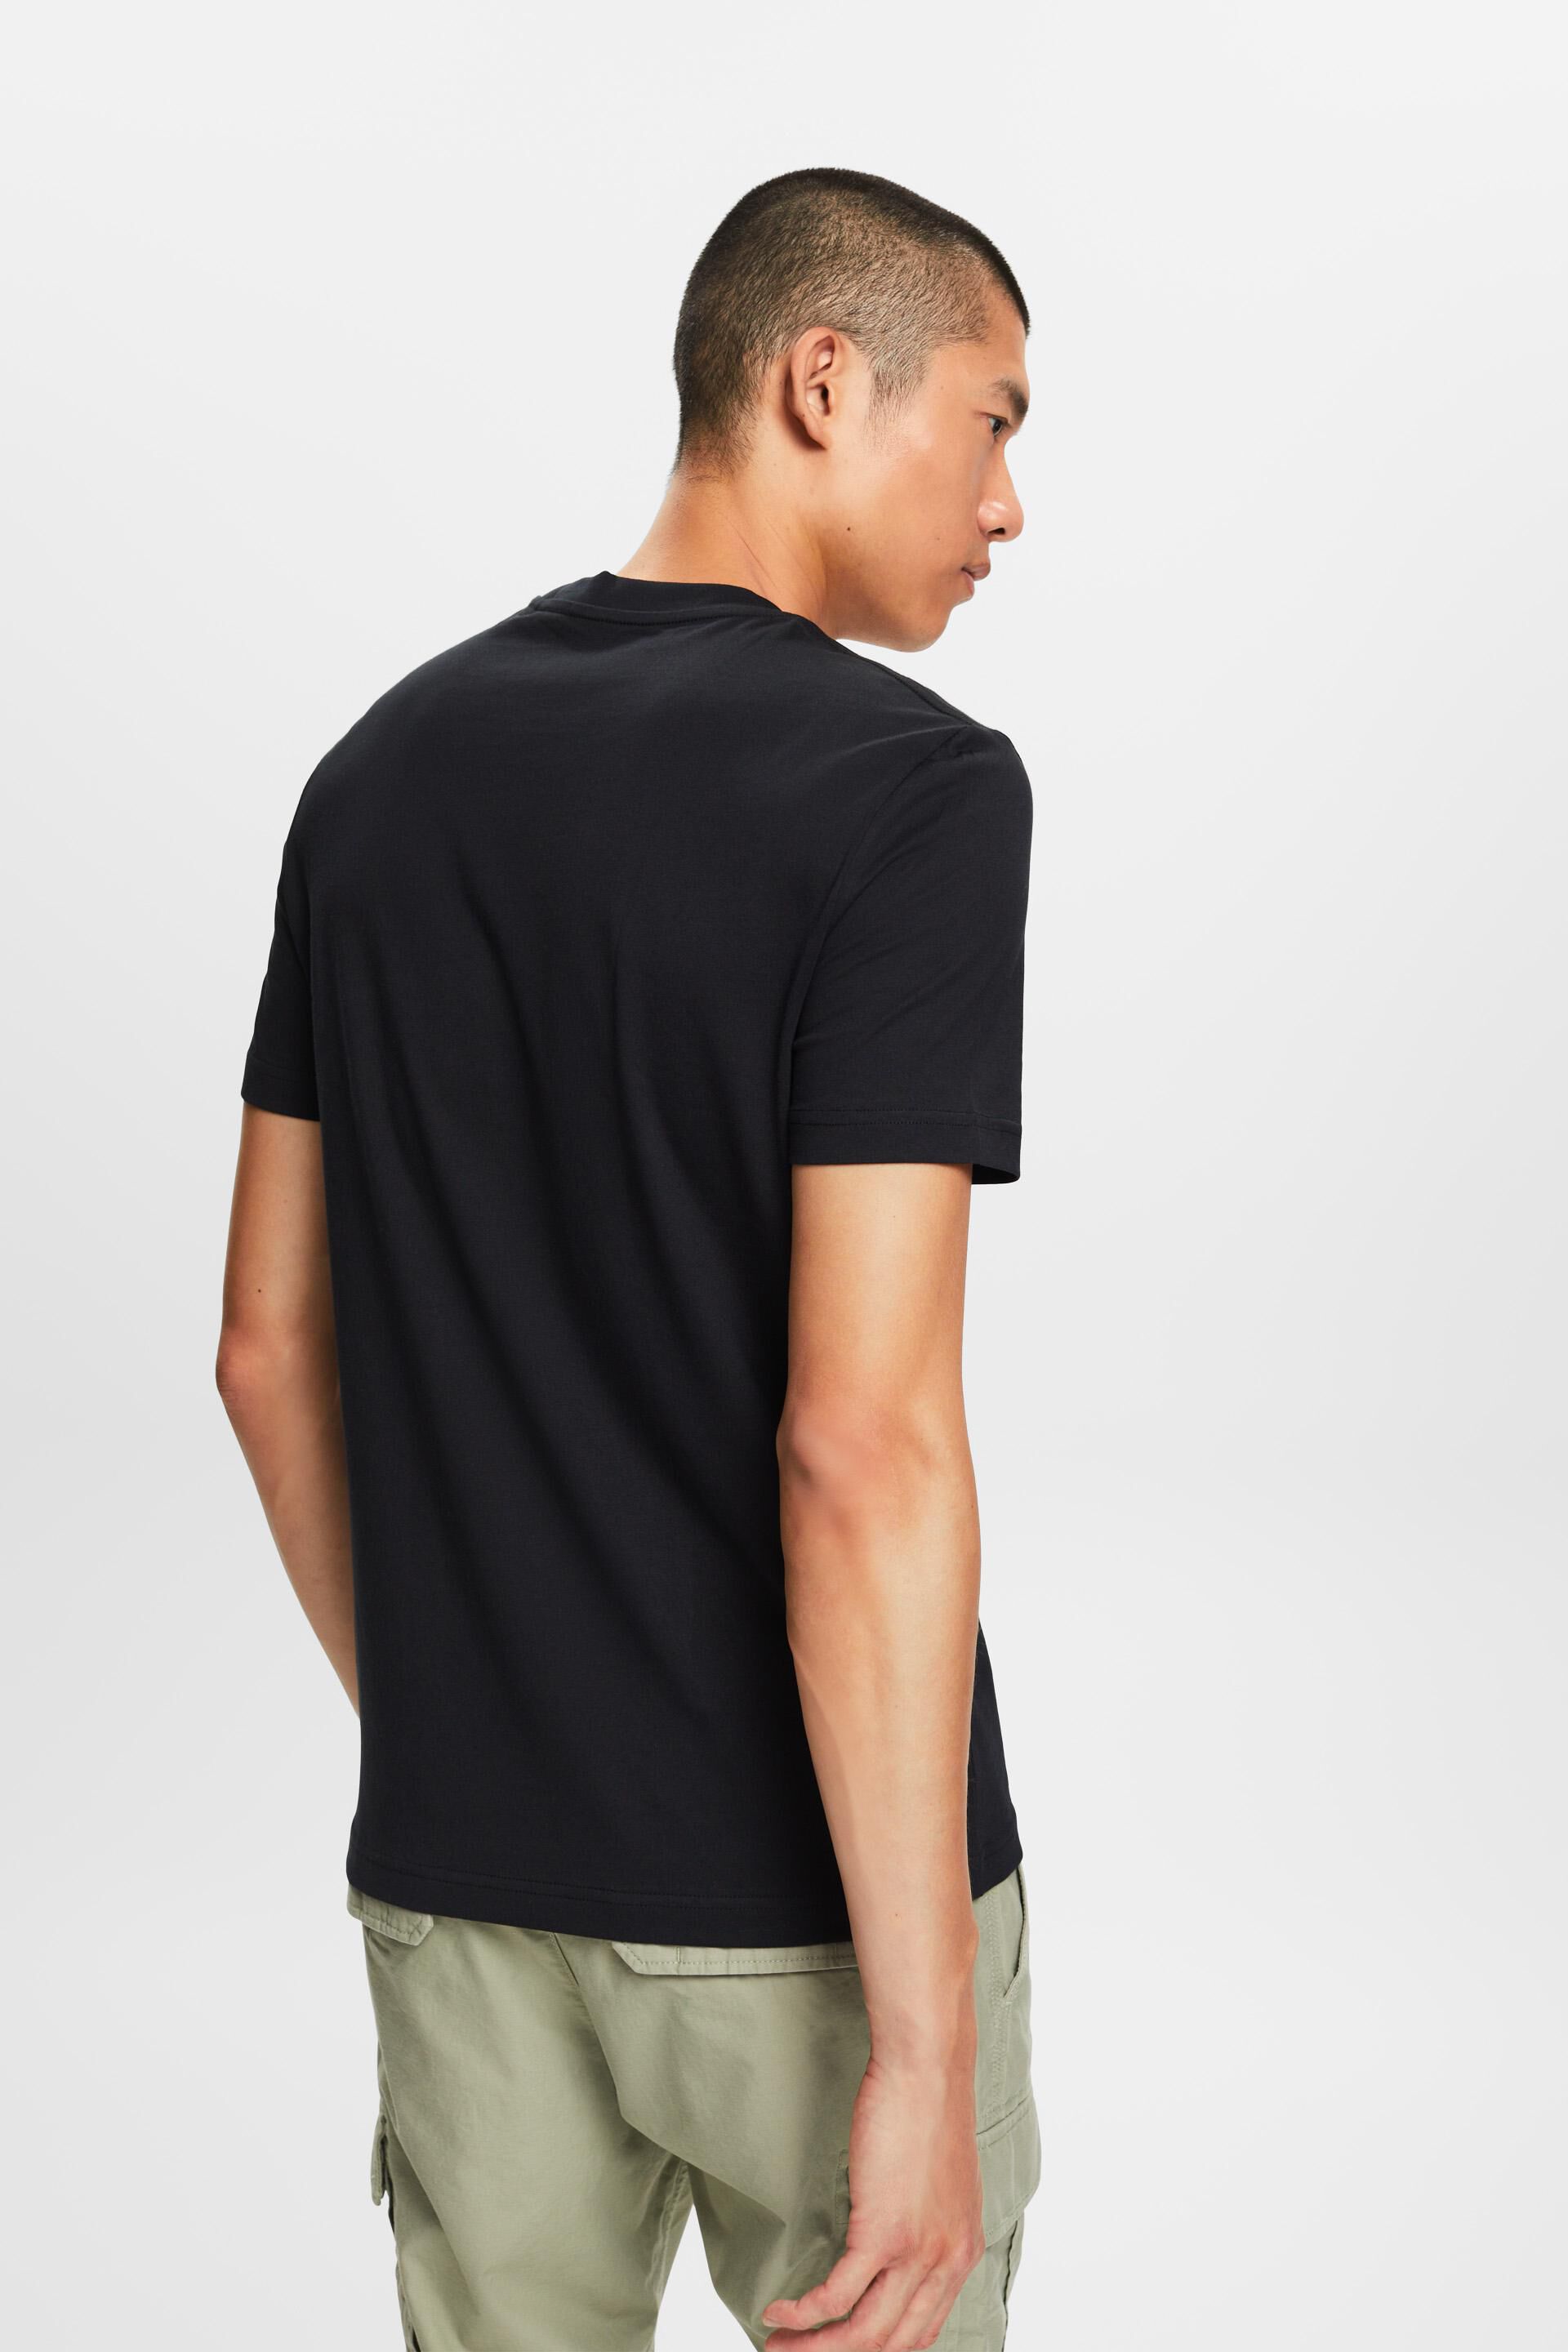 Esprit mit Rundhalsausschnitt, % 100 Baumwolle Jersey-T-Shirt